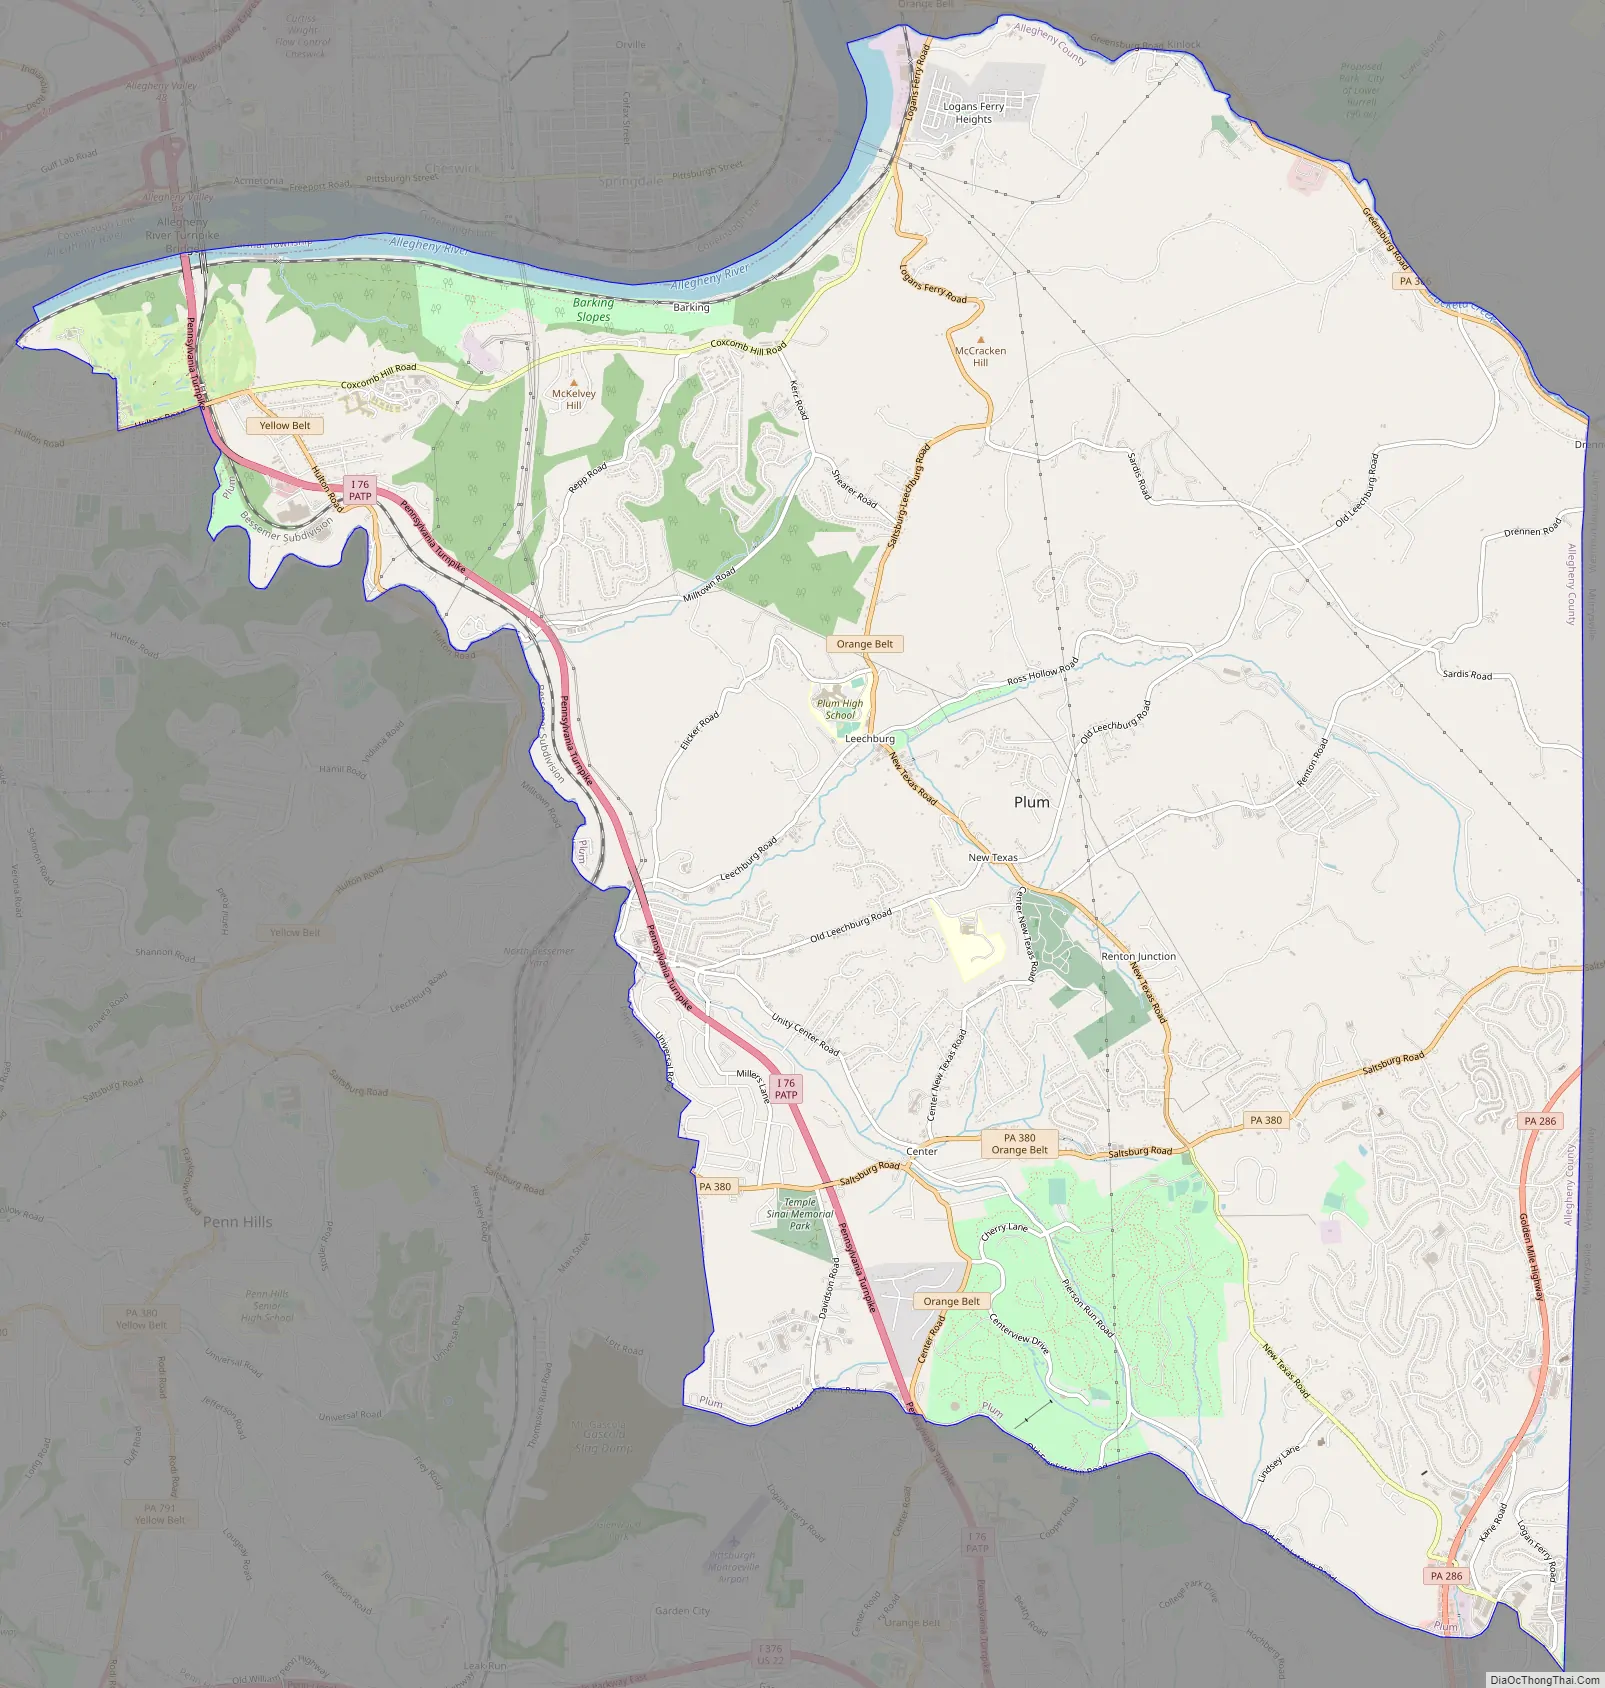 Map of Plum borough